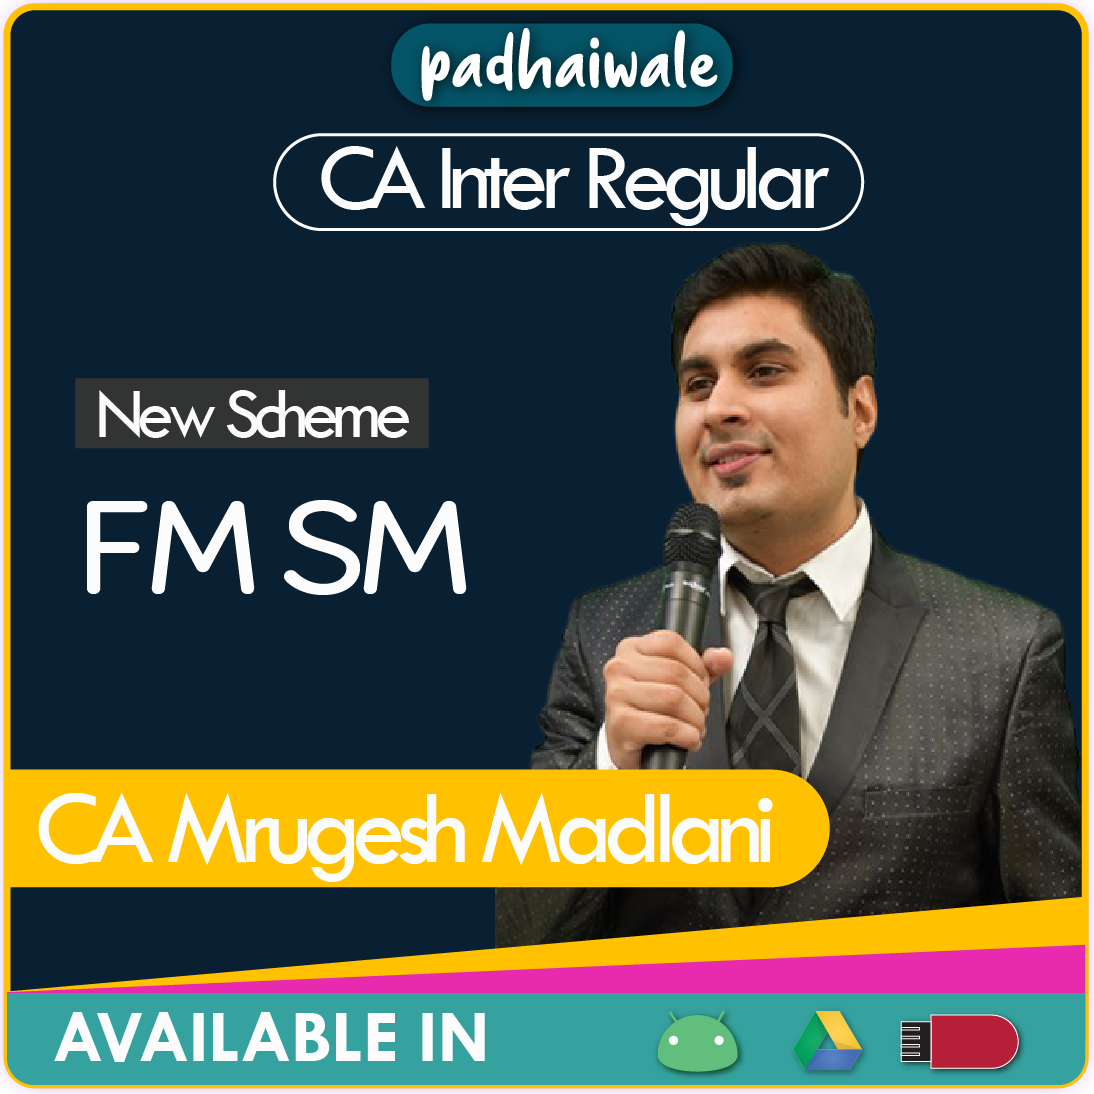 CA Inter FM SM New Scheme Mrugesh Madlani